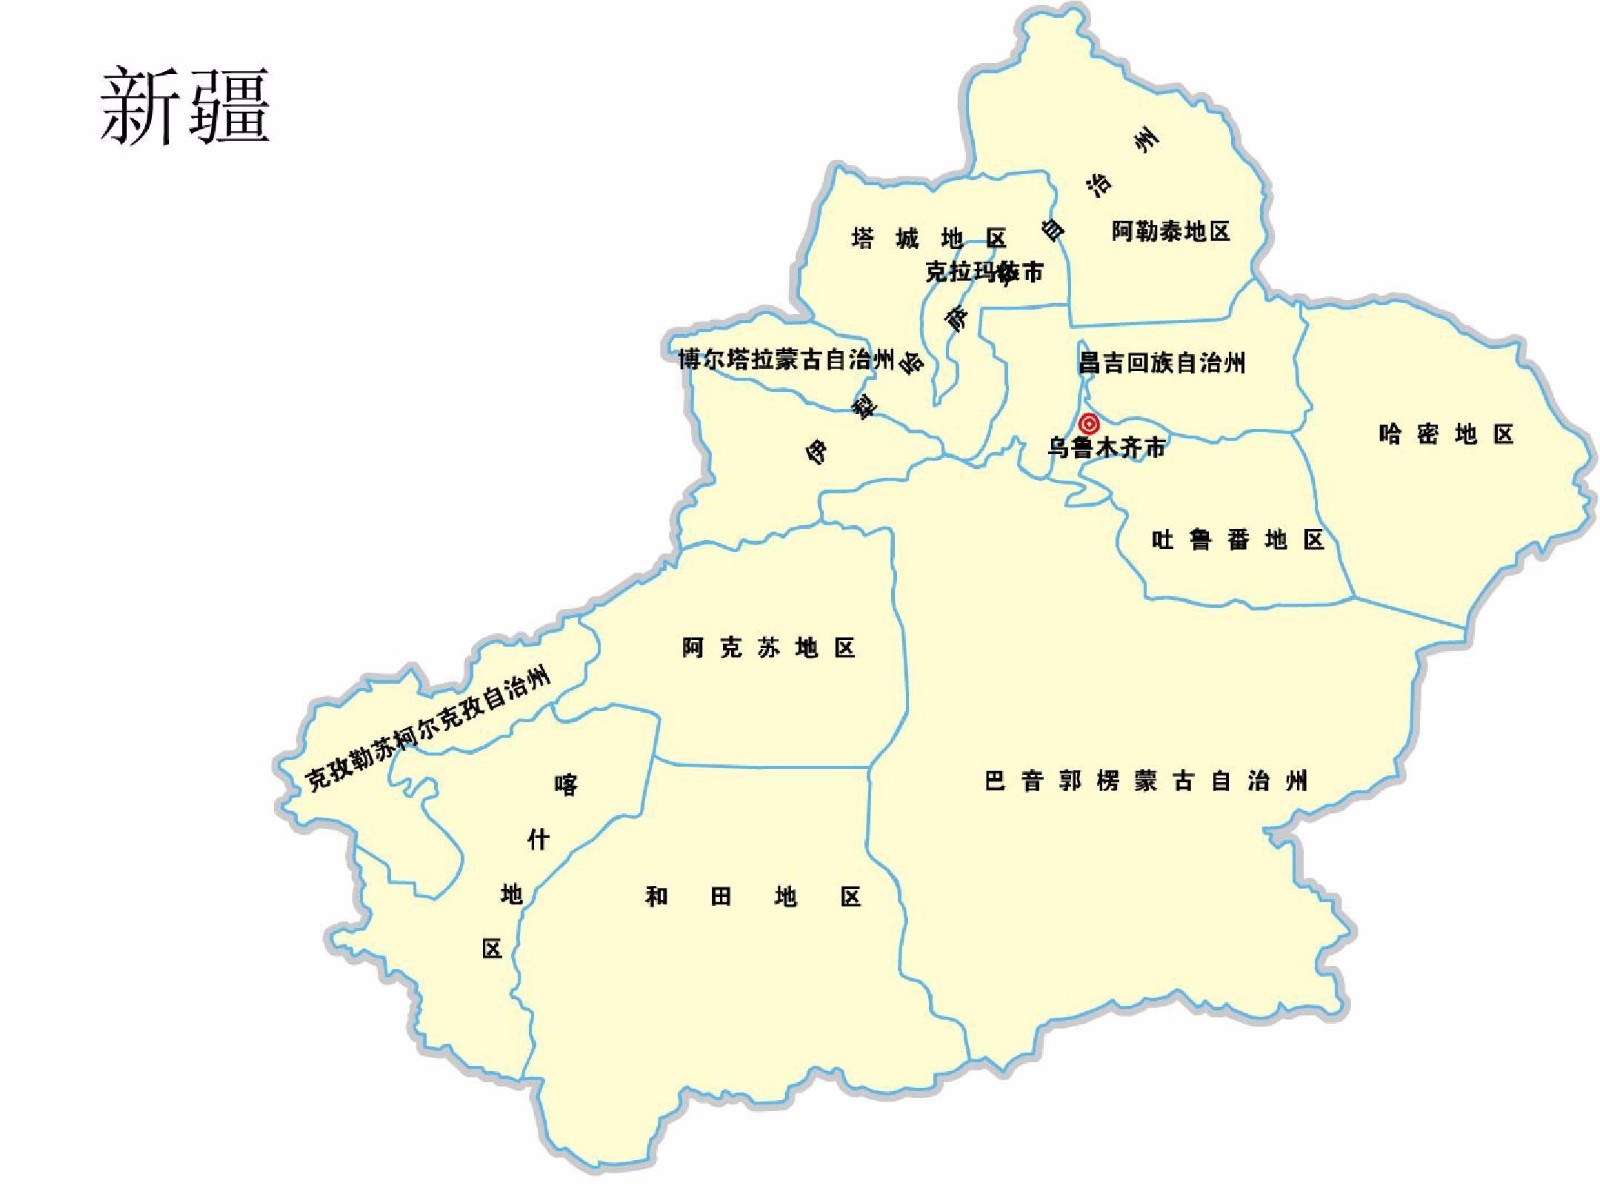 新疆行政图,标示出哈密在新疆的方位和大致面积 哈密地区地域辽阔